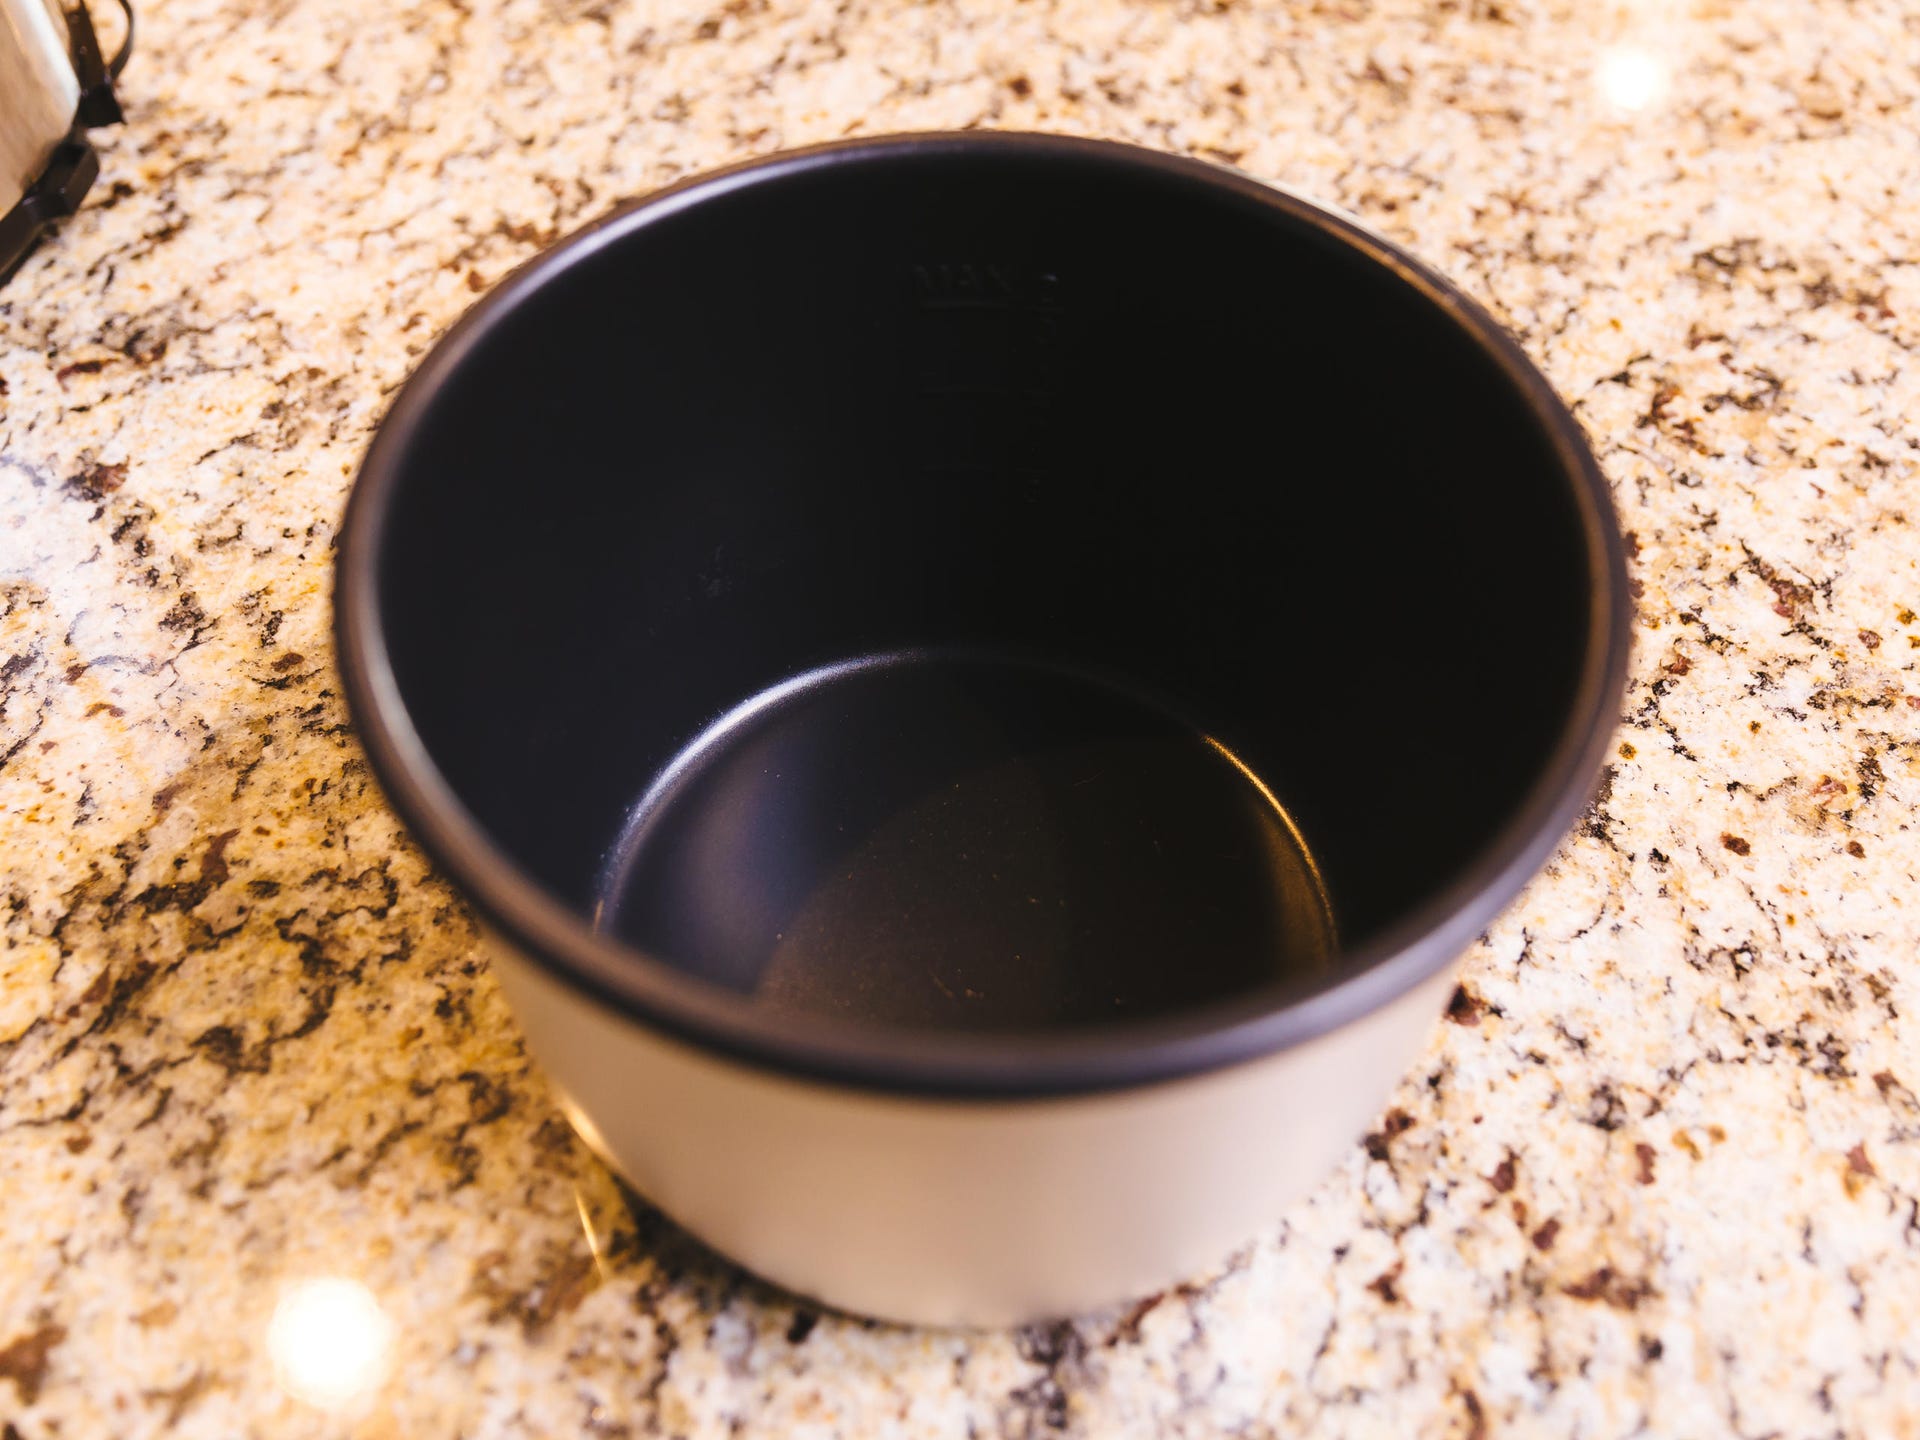 Instant Pot's Lux beats back Crock-Pot with better flavor - CNET